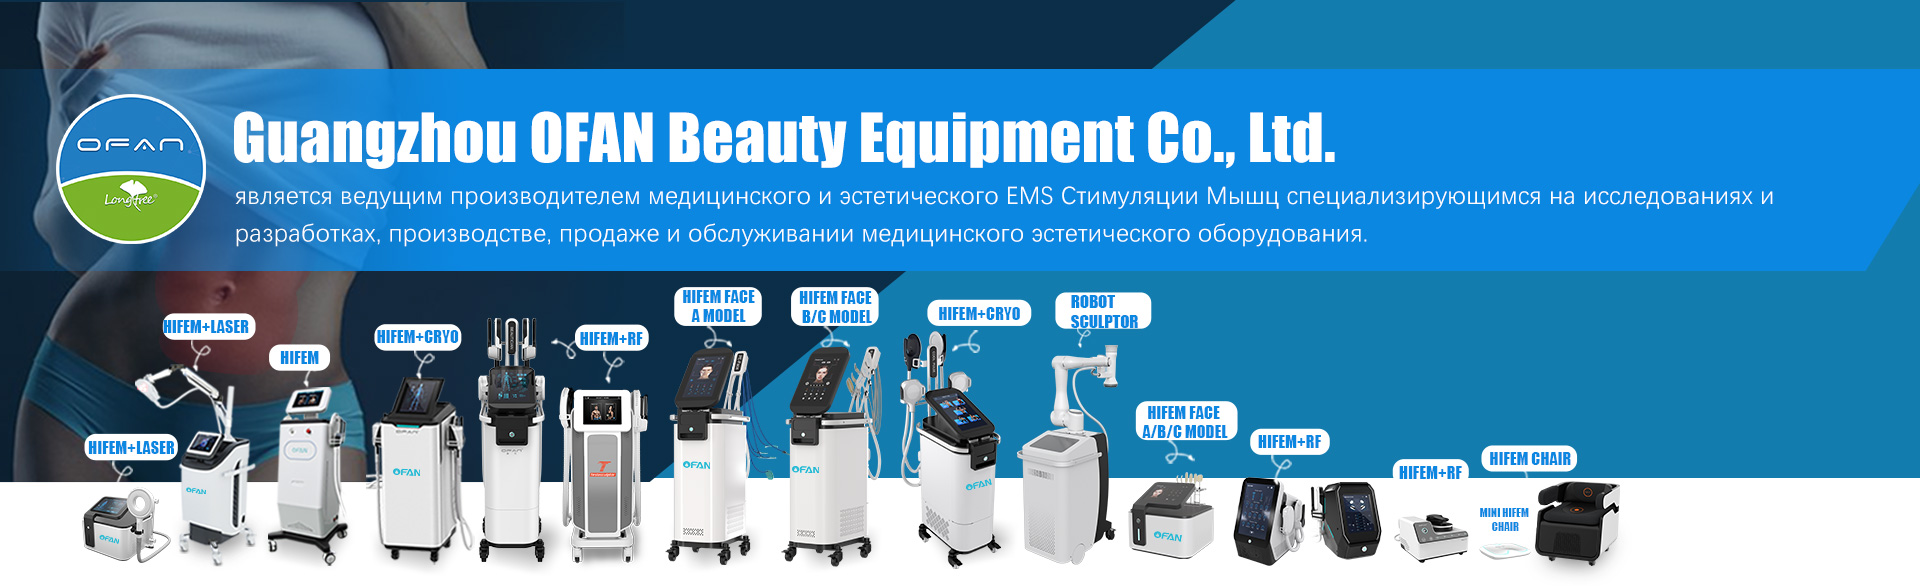 Guangzhou OFAN Beauty Equipment Co., Ltd.